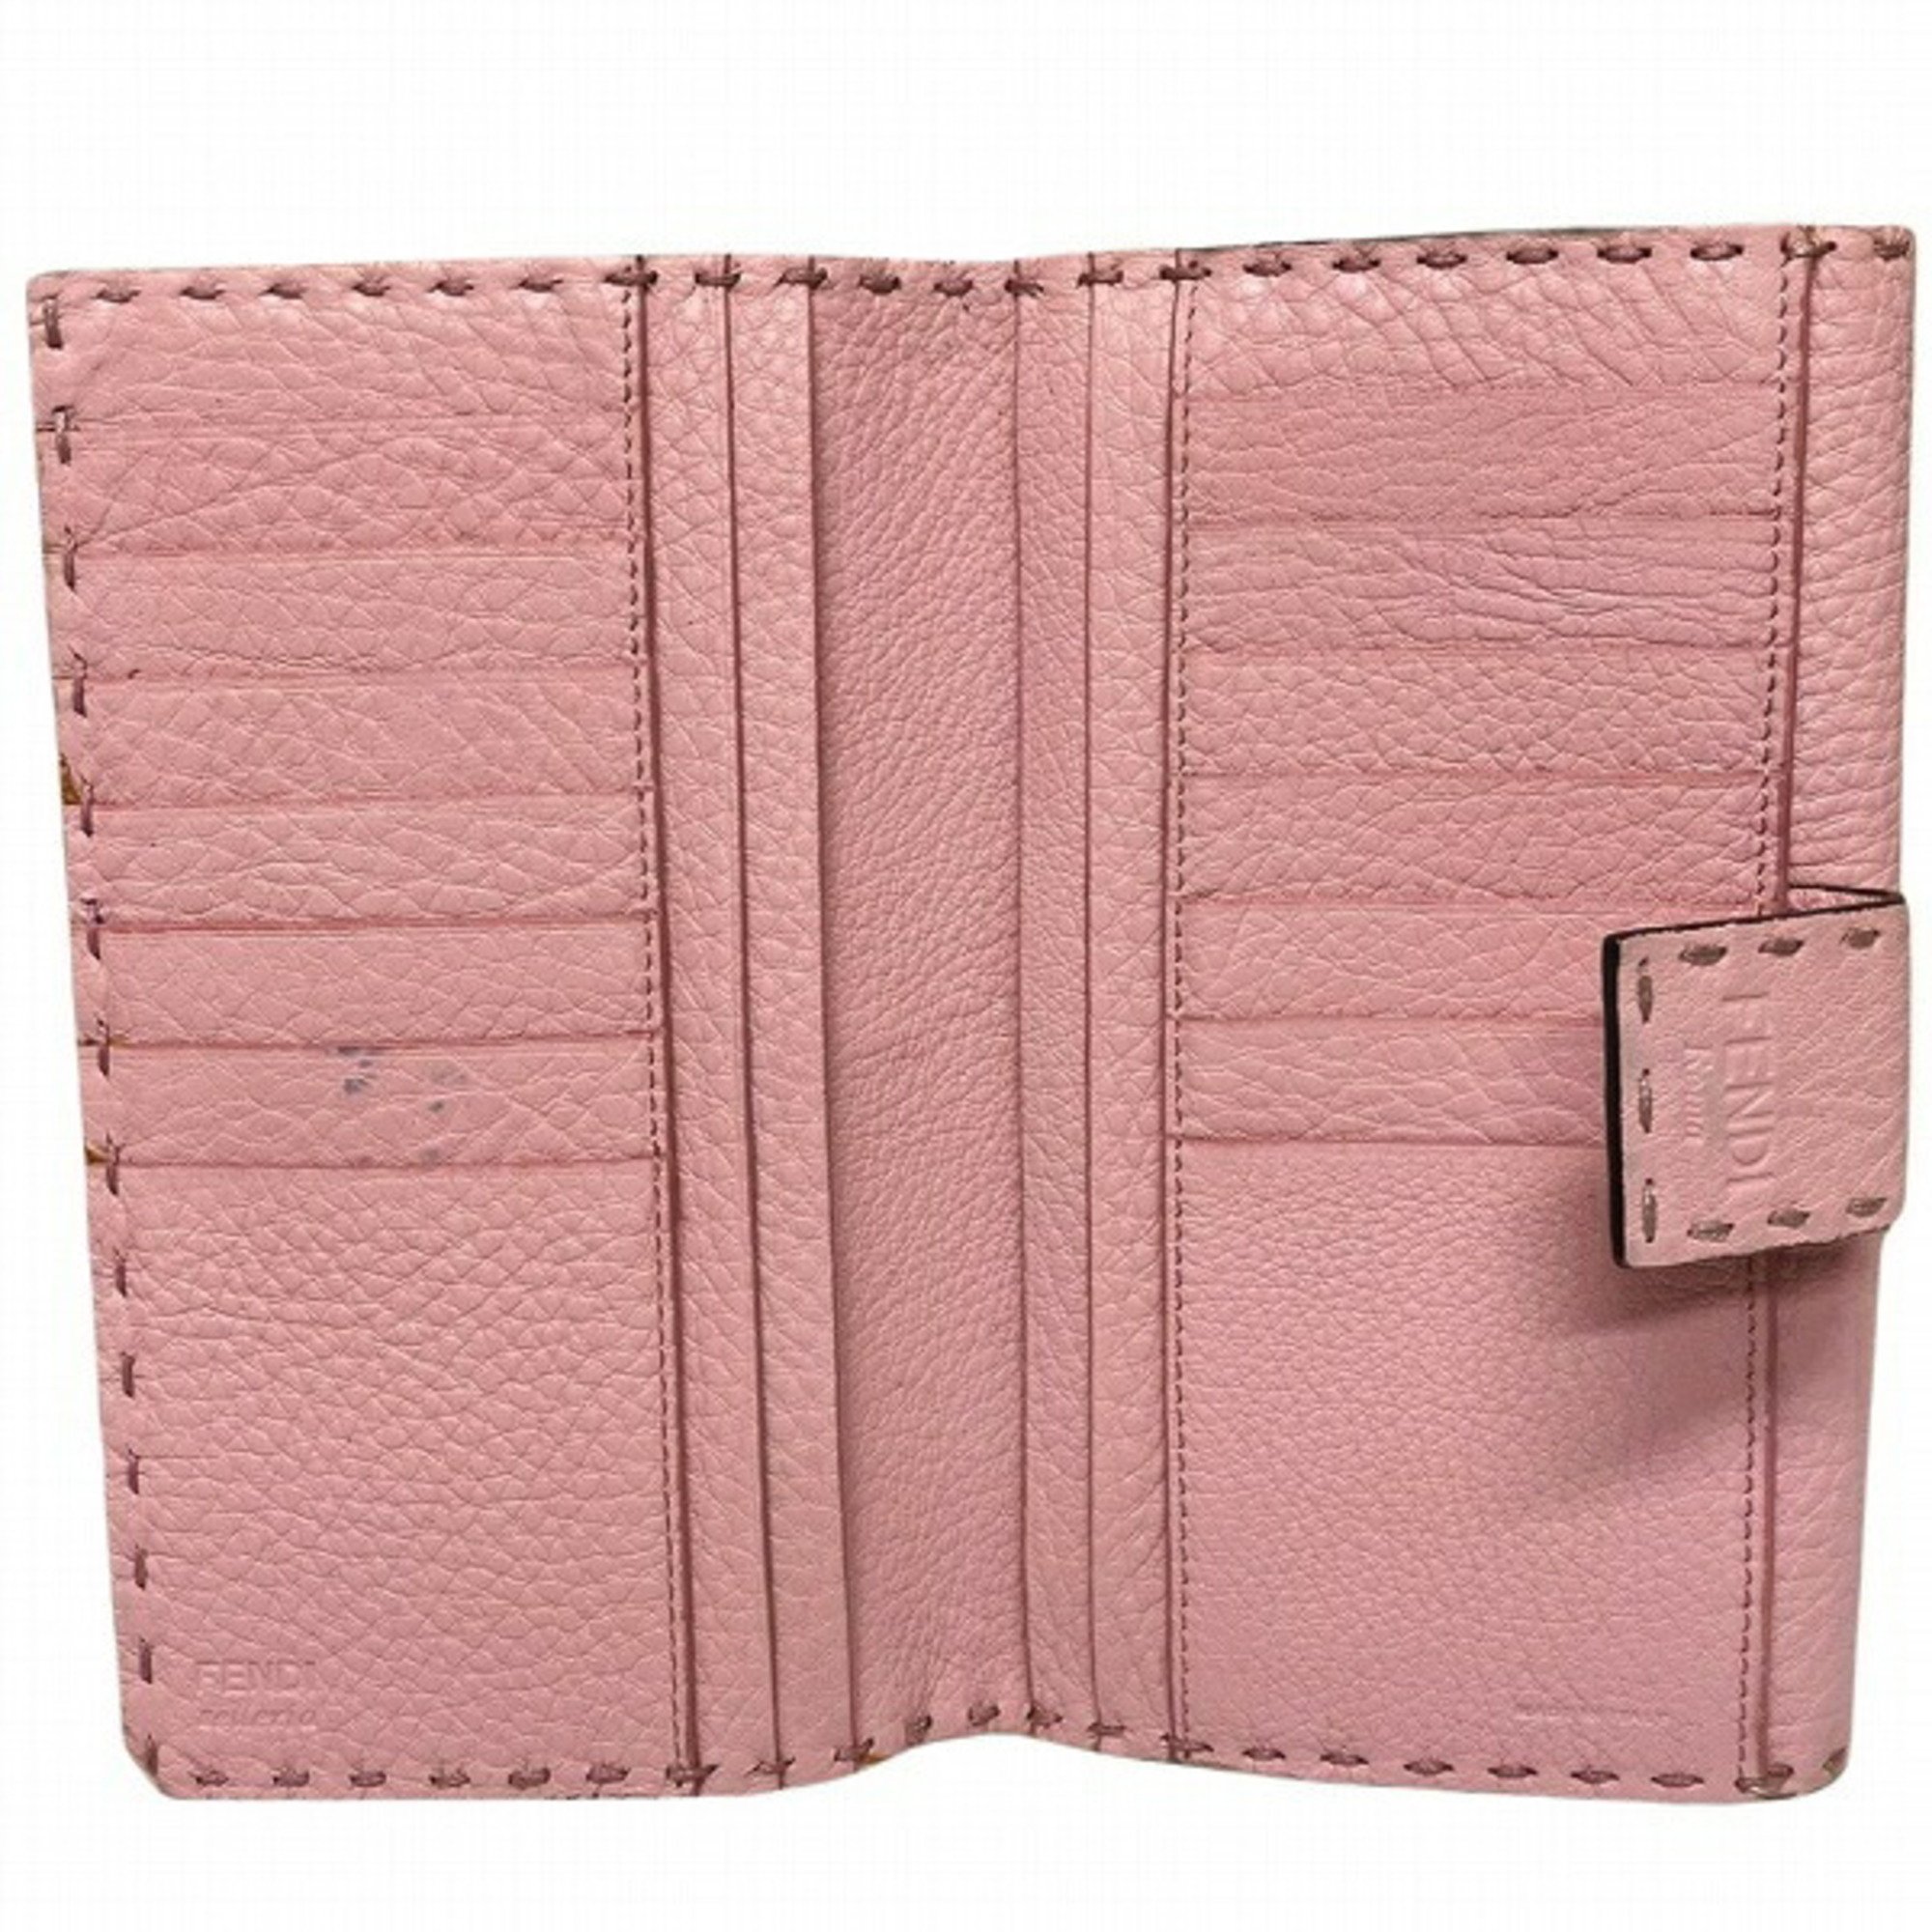 FENDI Selleria Peekaboo 8M0308 Pink Bifold Wallet Ladies